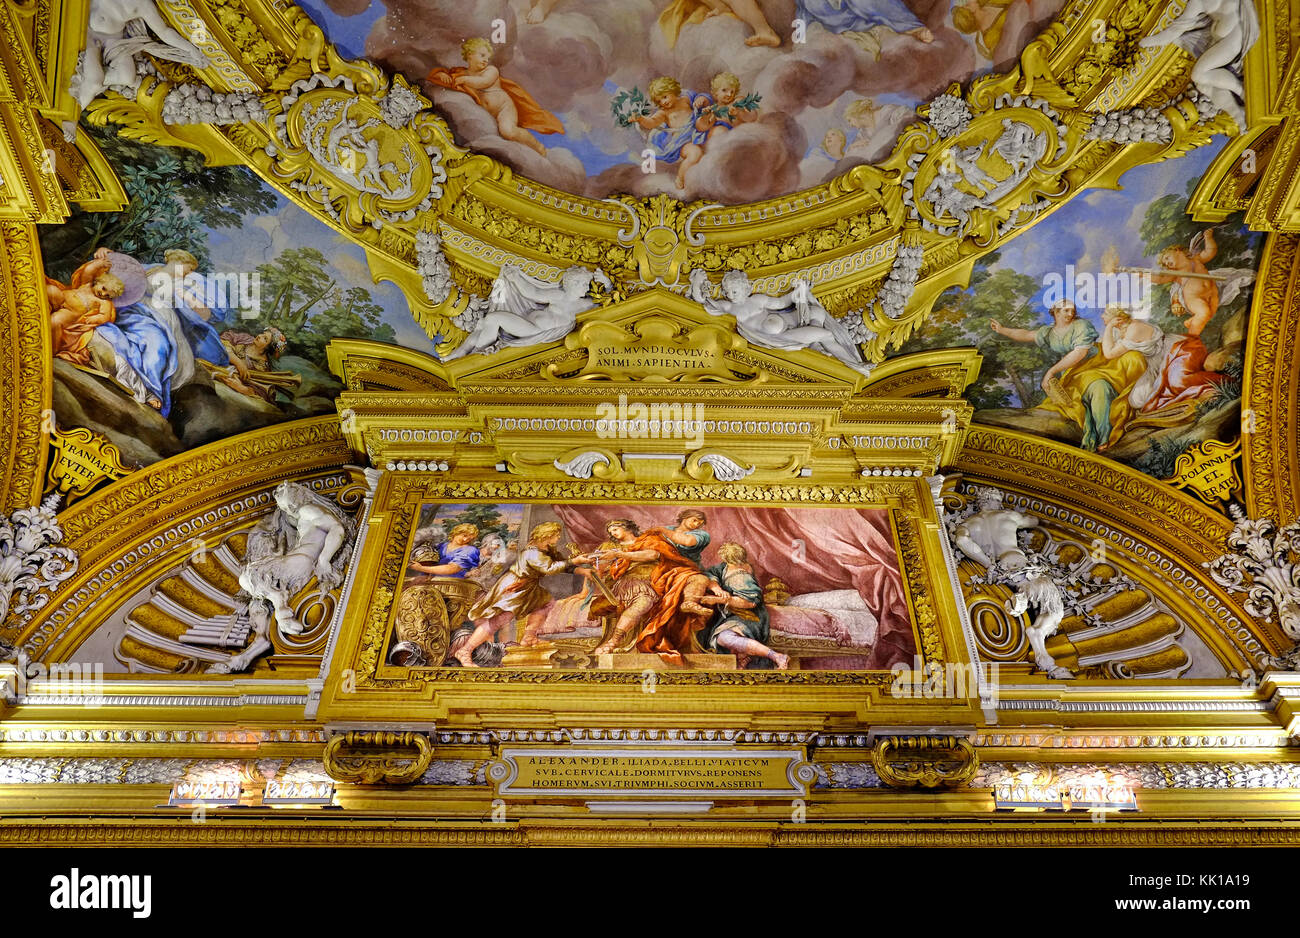 Très décoratif plafond dans le palais Pitti Palace, Florence, Italie Banque D'Images